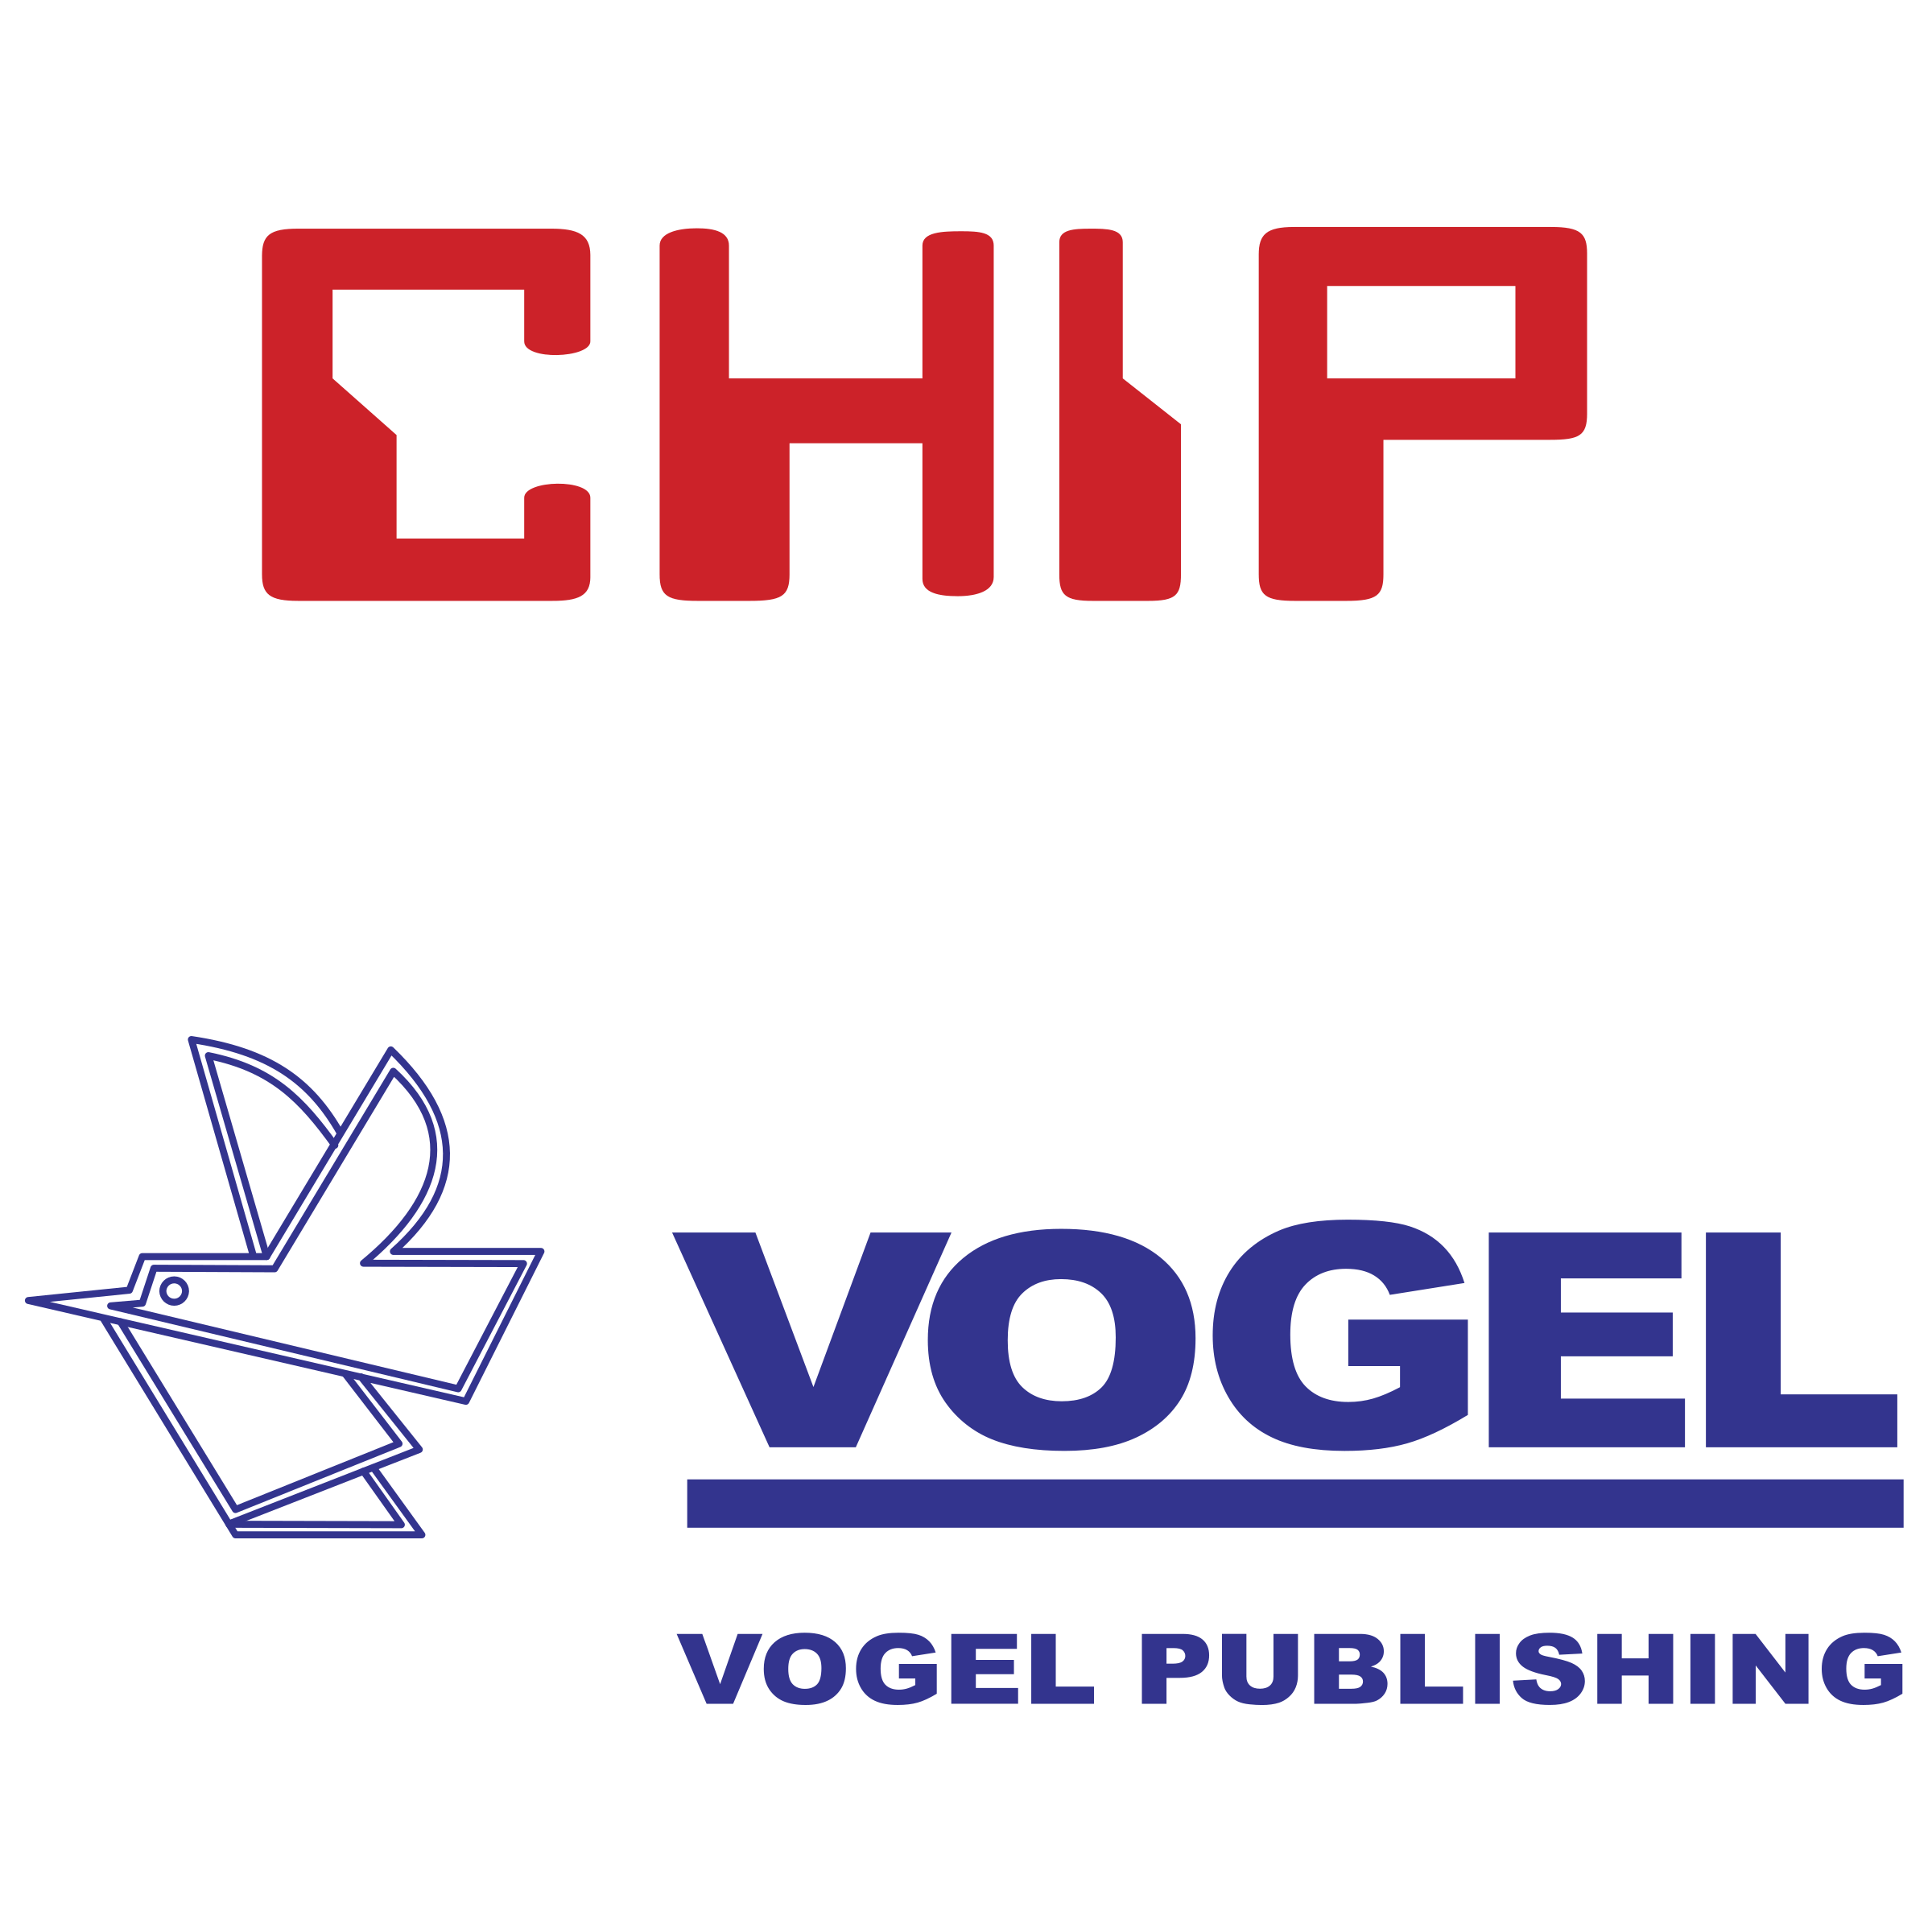 Chip Logo - Chip Vogel Logo PNG Transparent & SVG Vector